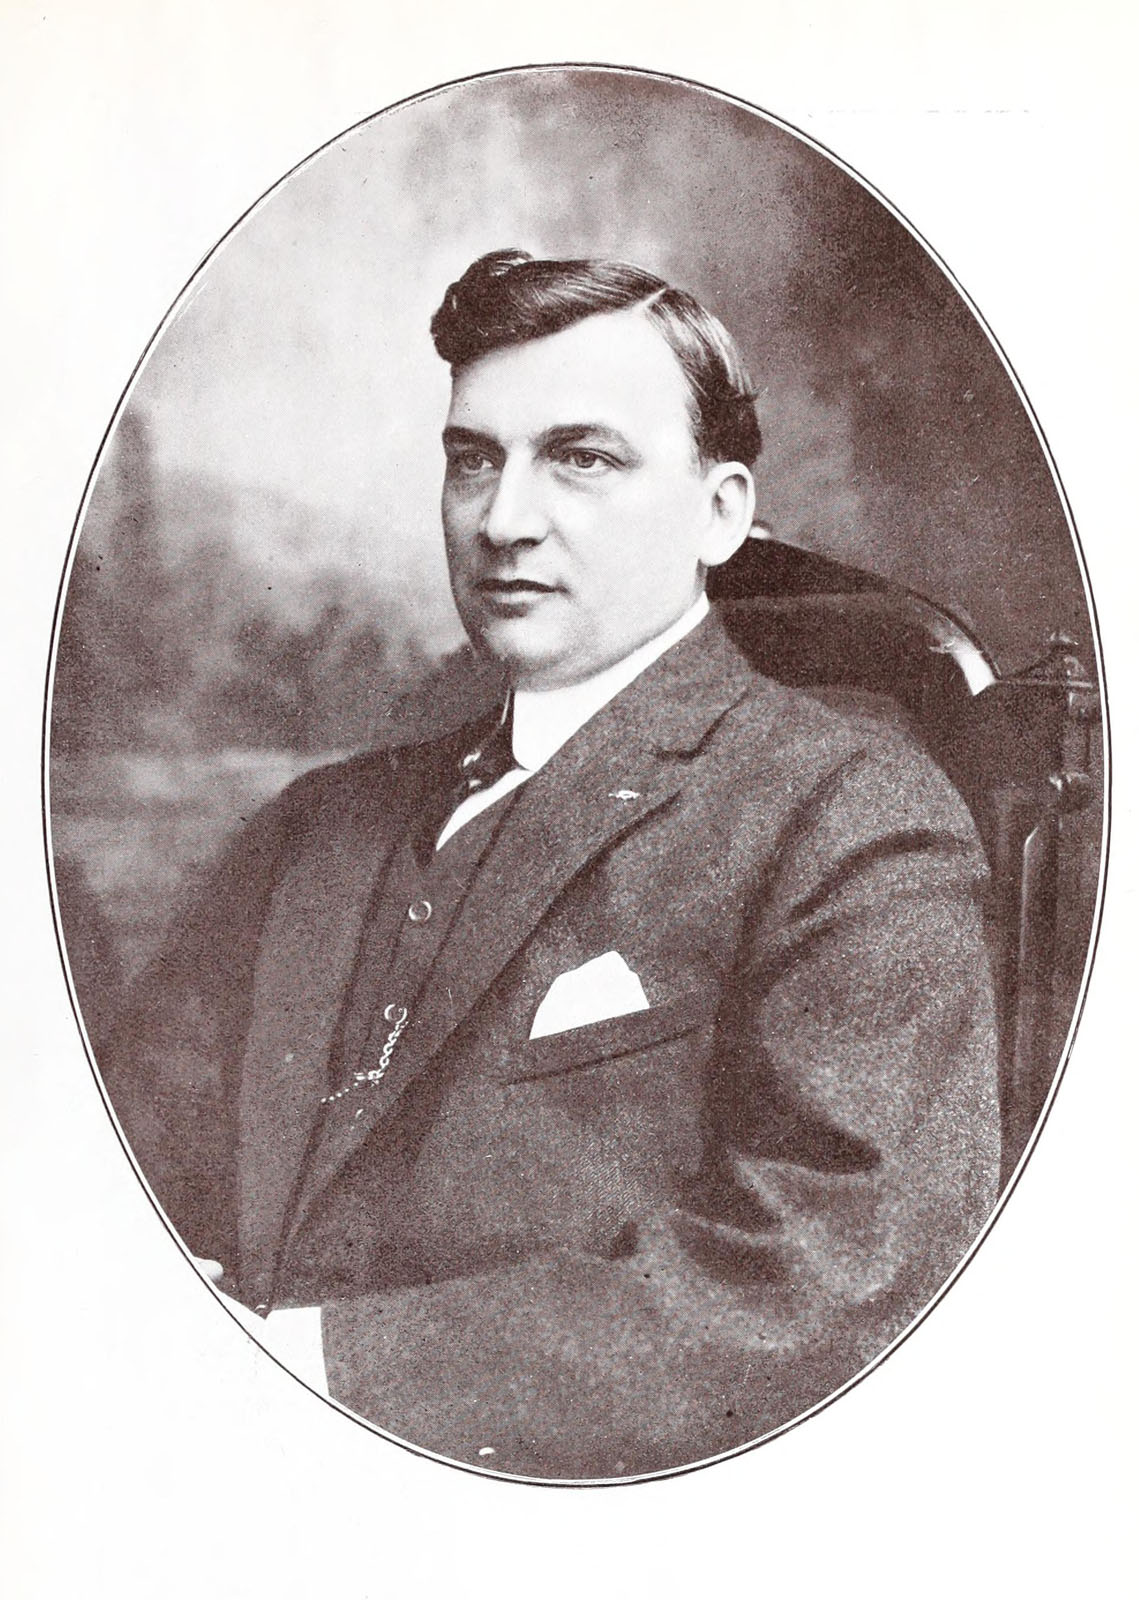 Herbert Prior